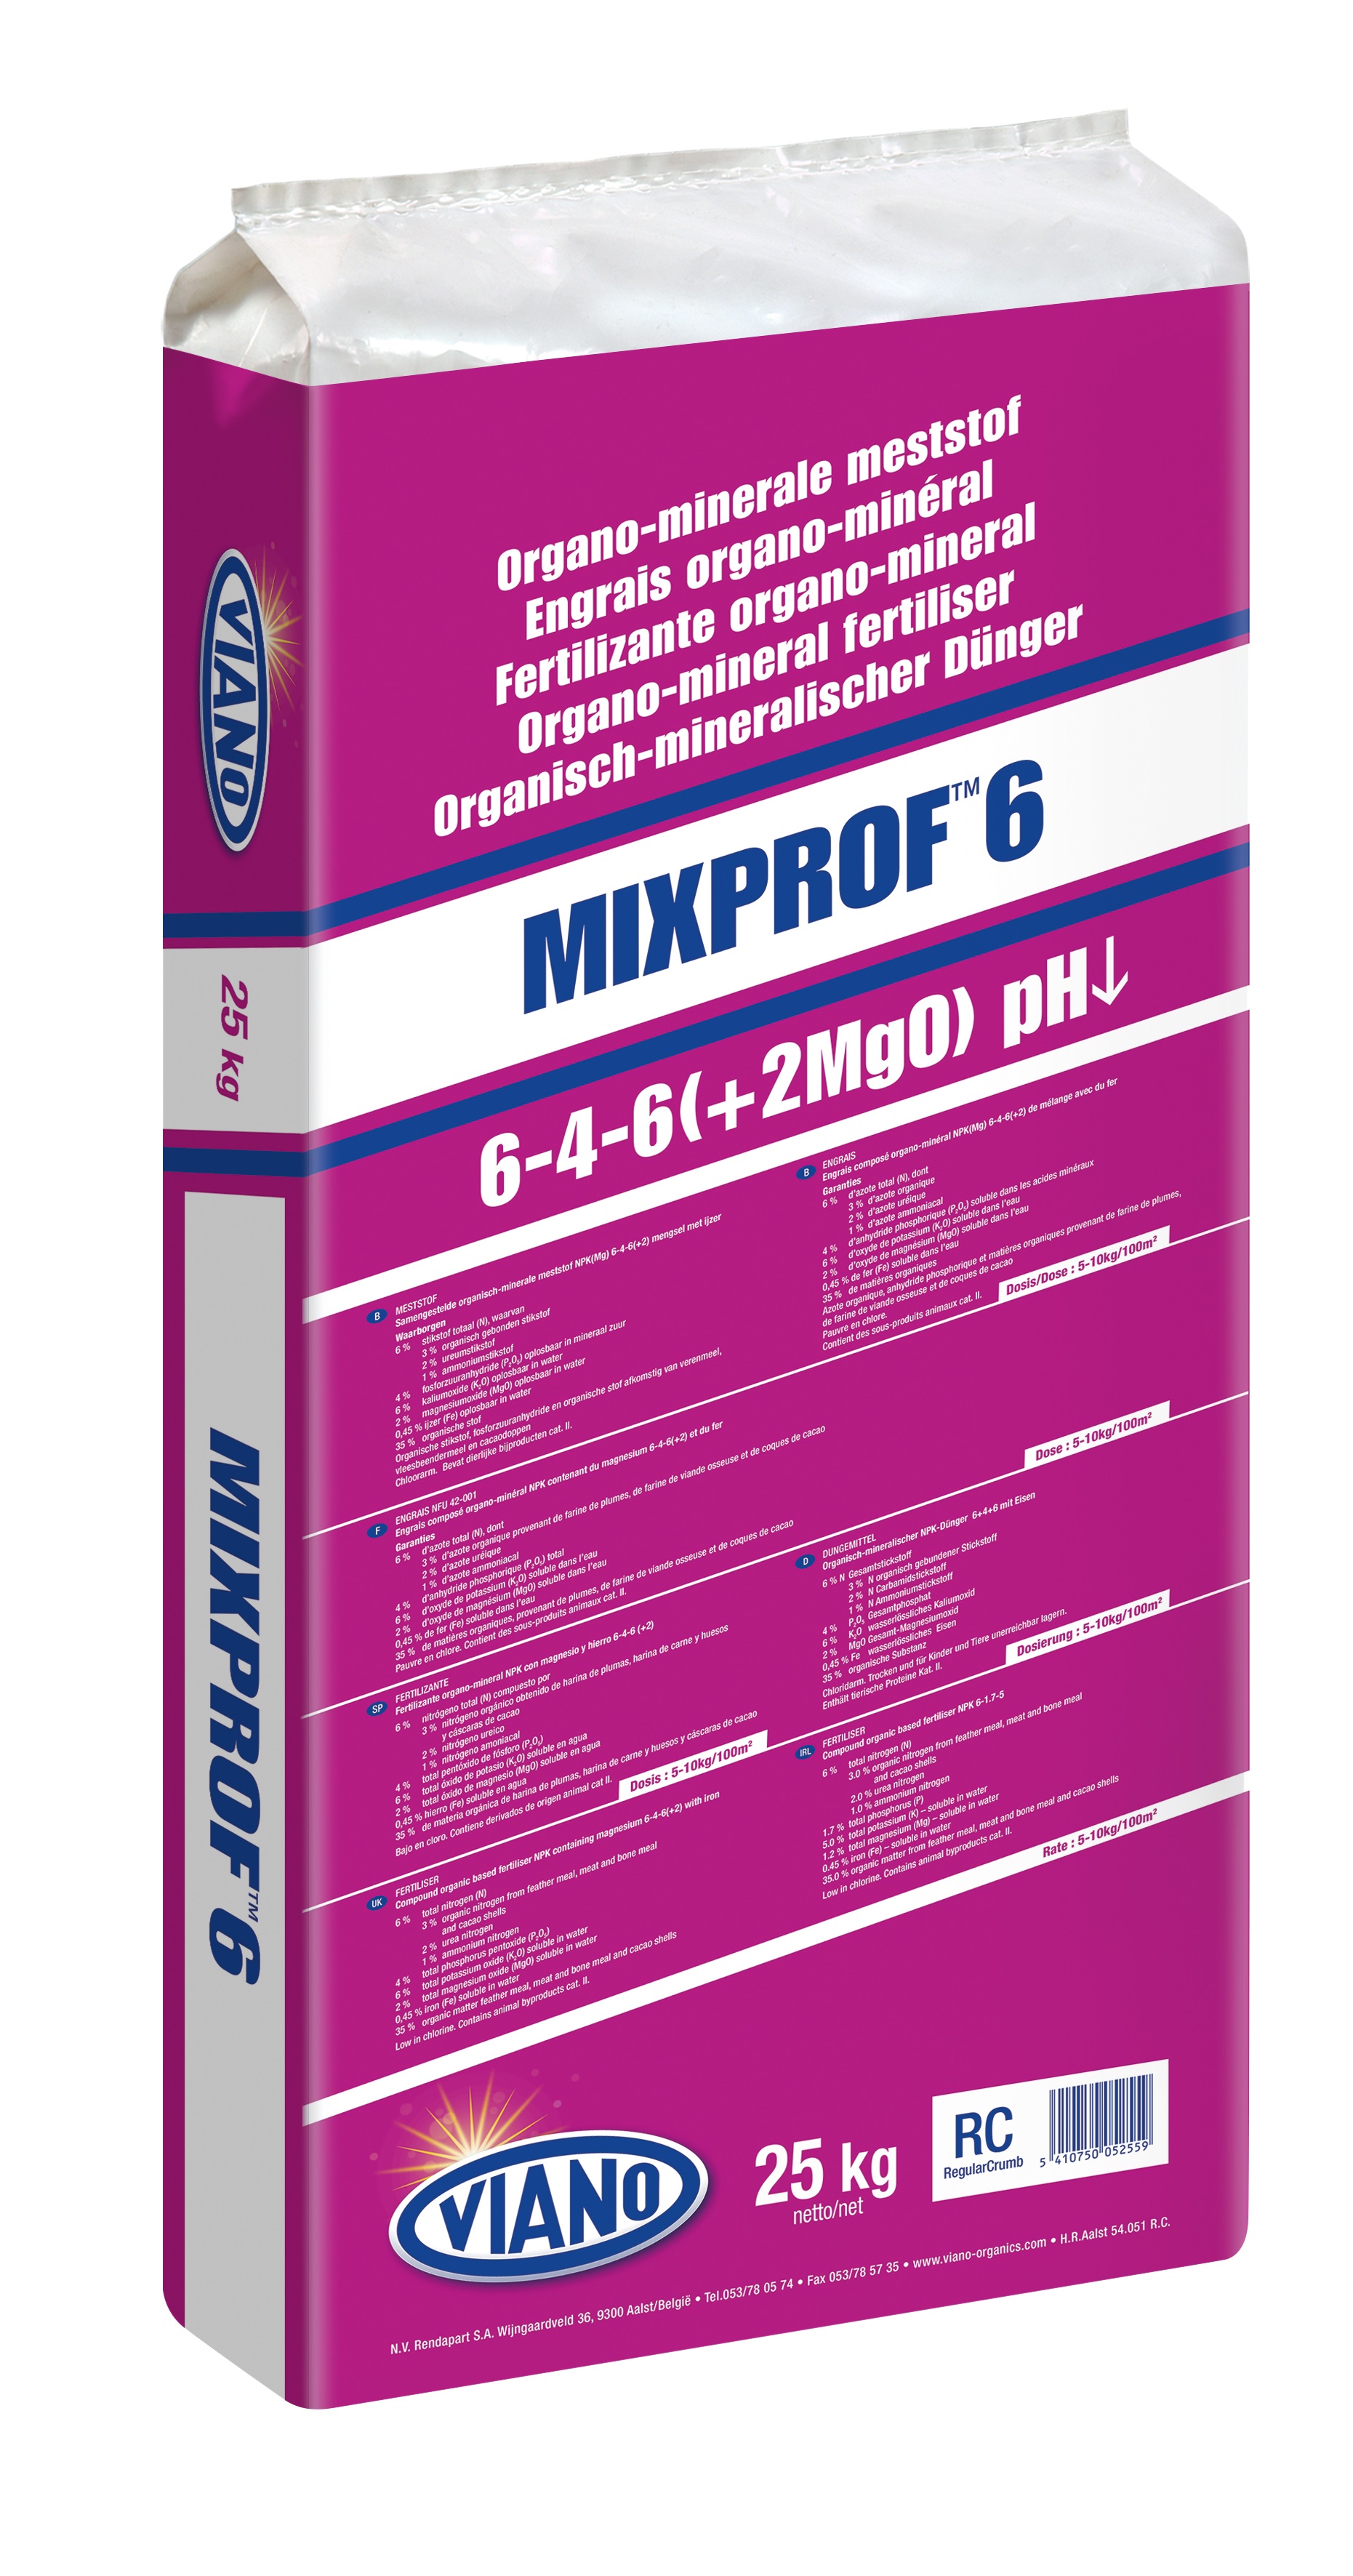 Viano Mixprof 6 pH niedriger organischer Dünger für saure Böden 25 kg